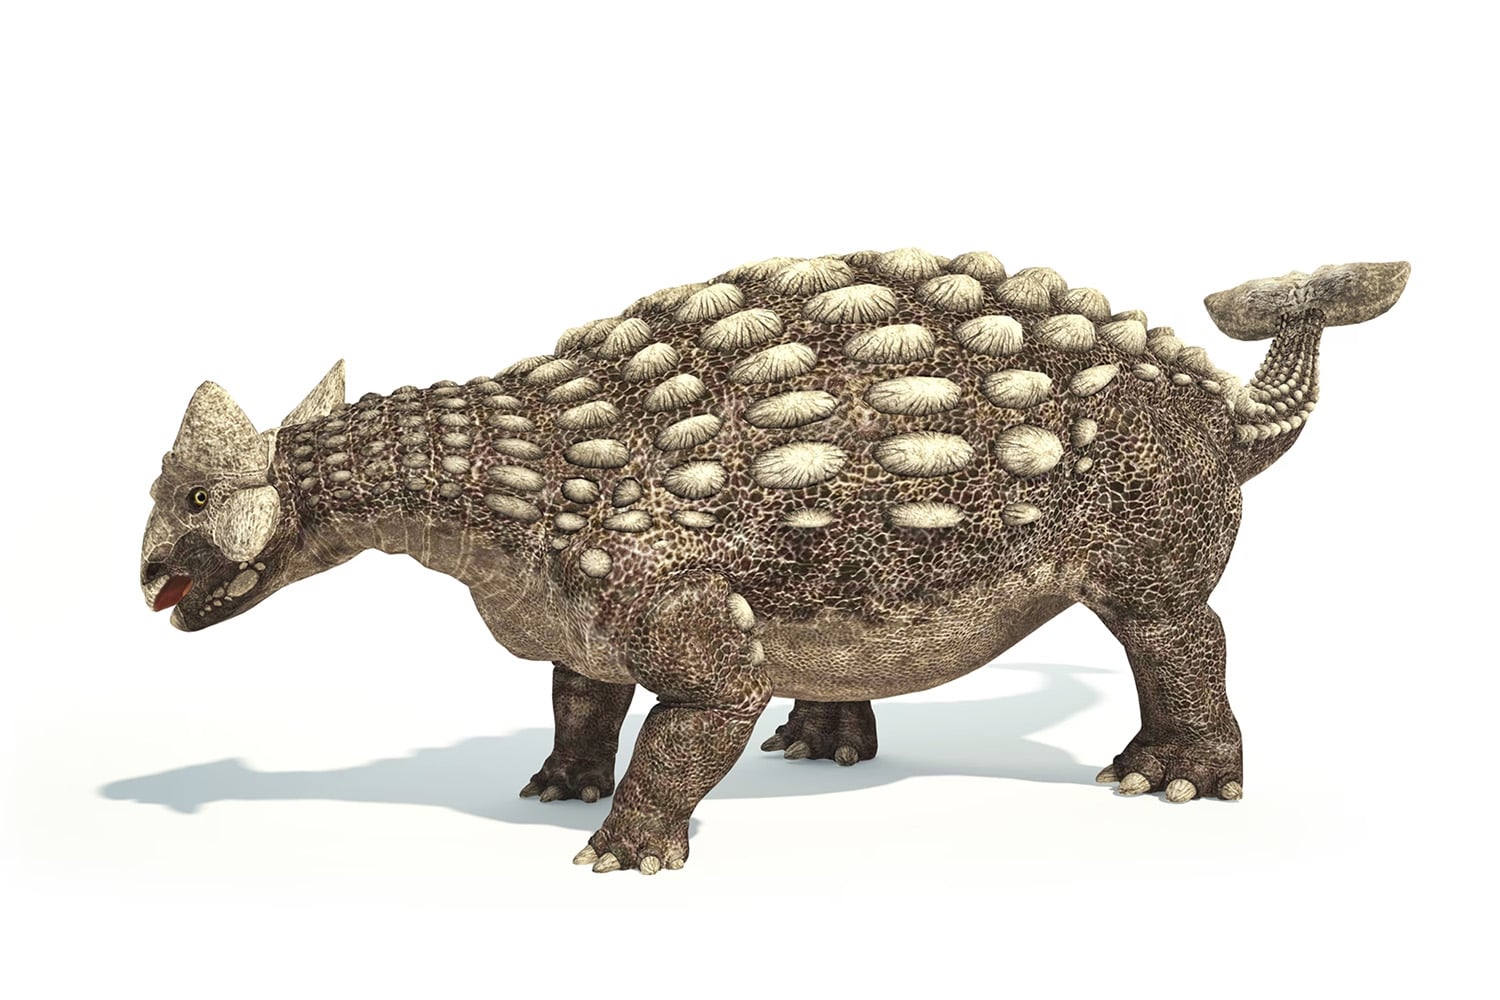 17 interesting facts about Ankylosaurus